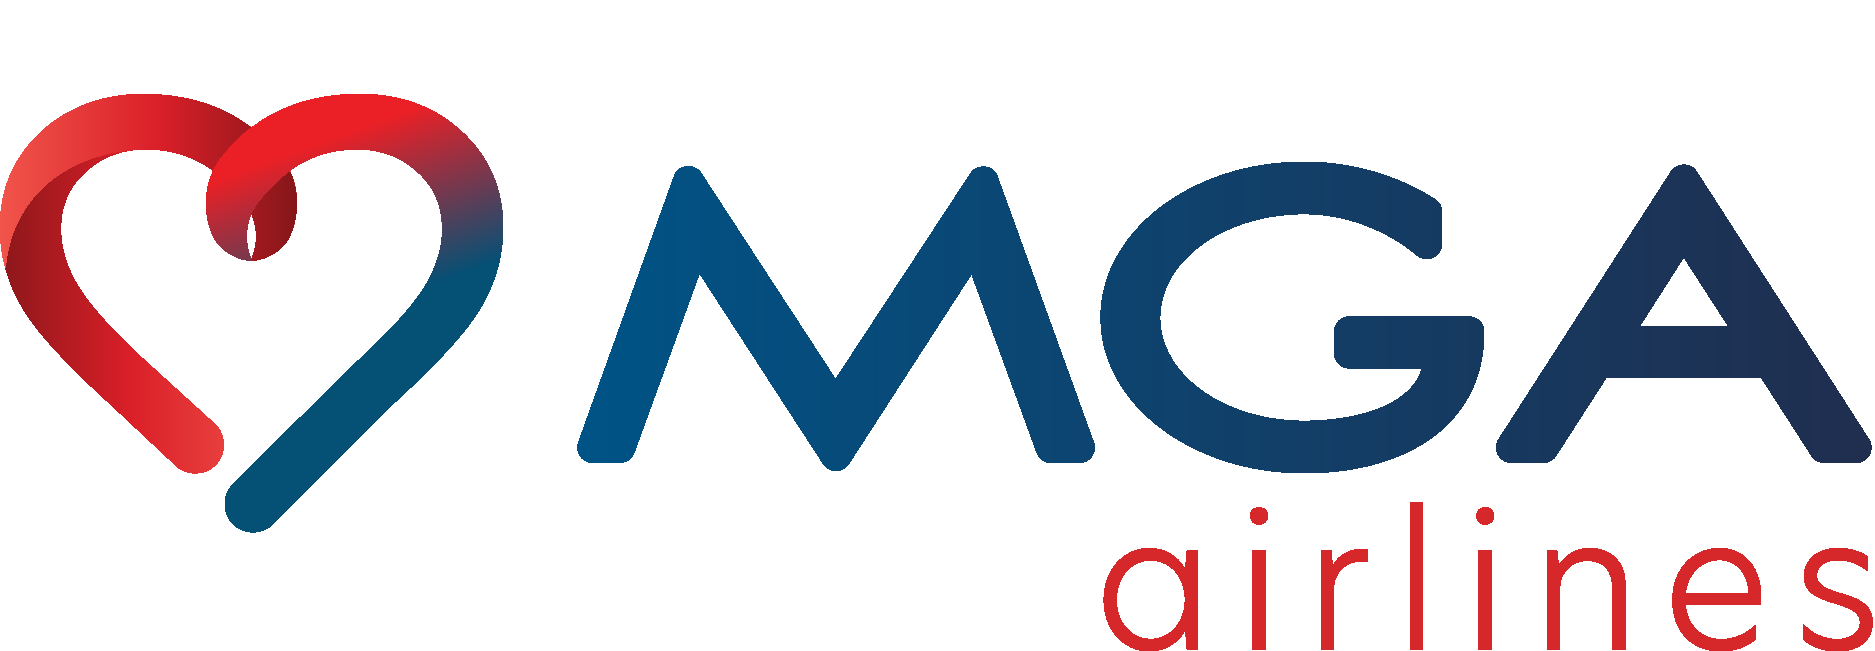 Mavi Gök Airlines Logo Vector